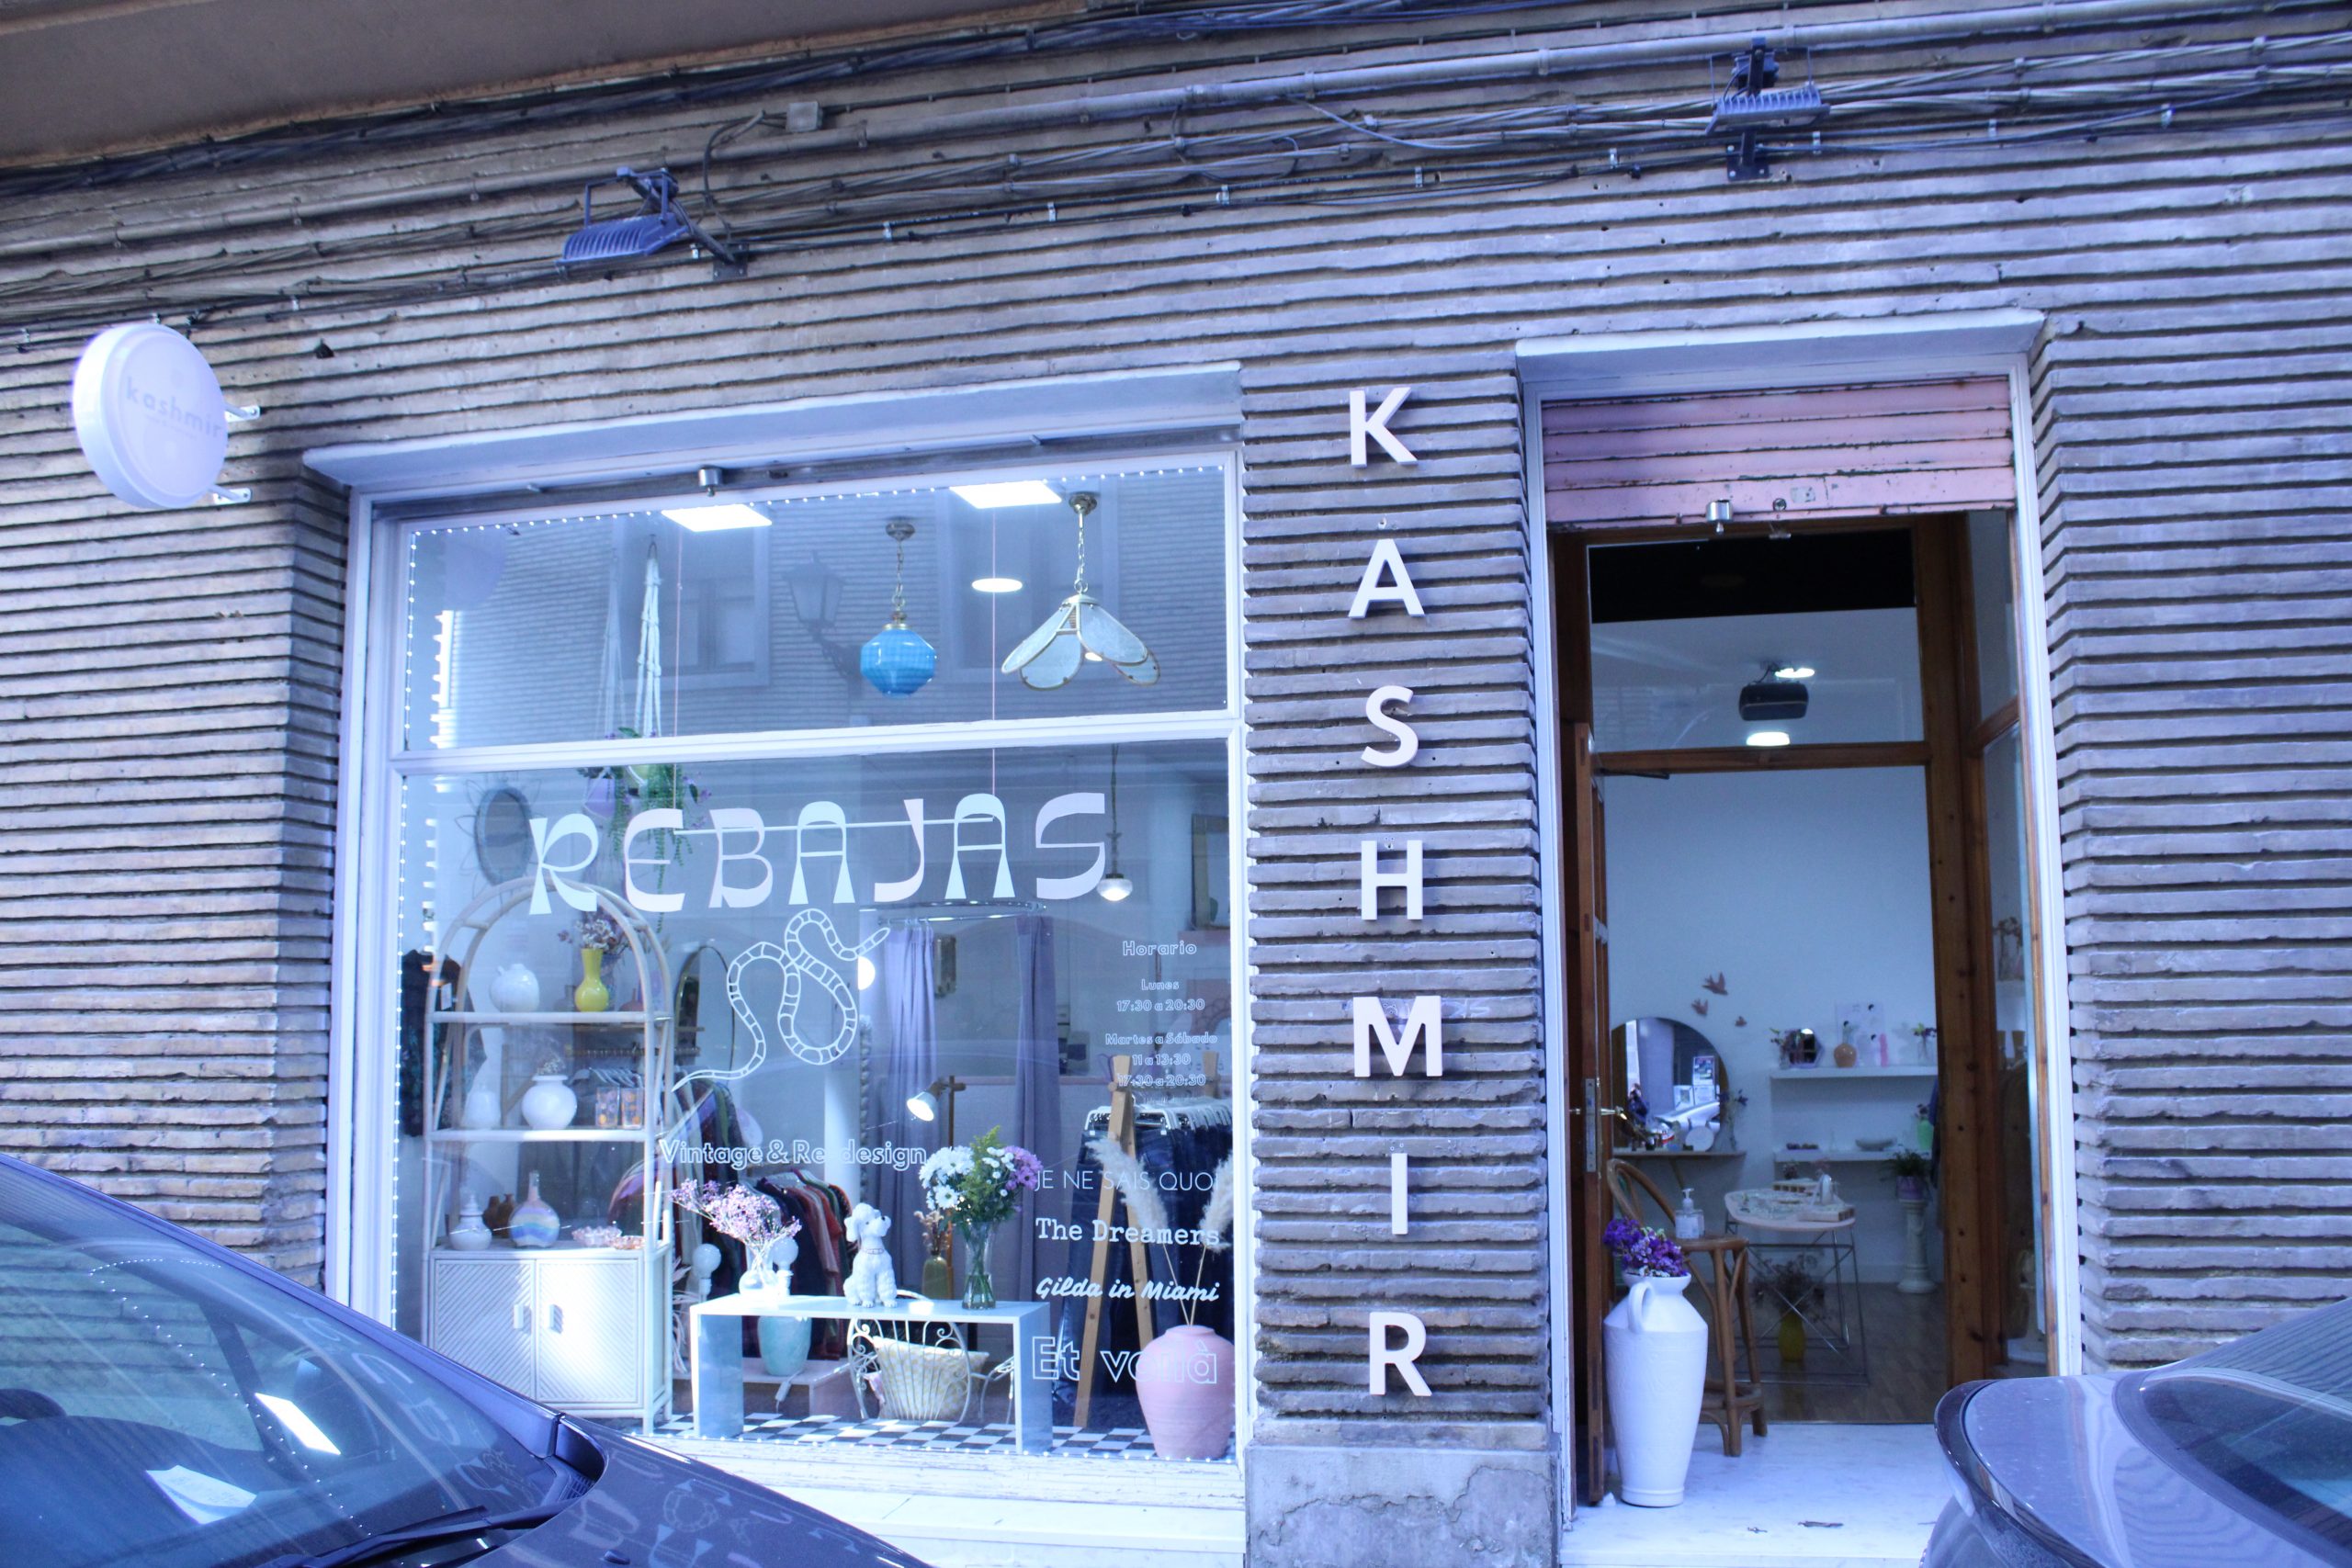 La tienda Kashmir está situada en la calle Santo Dominguito de Val / P.S.